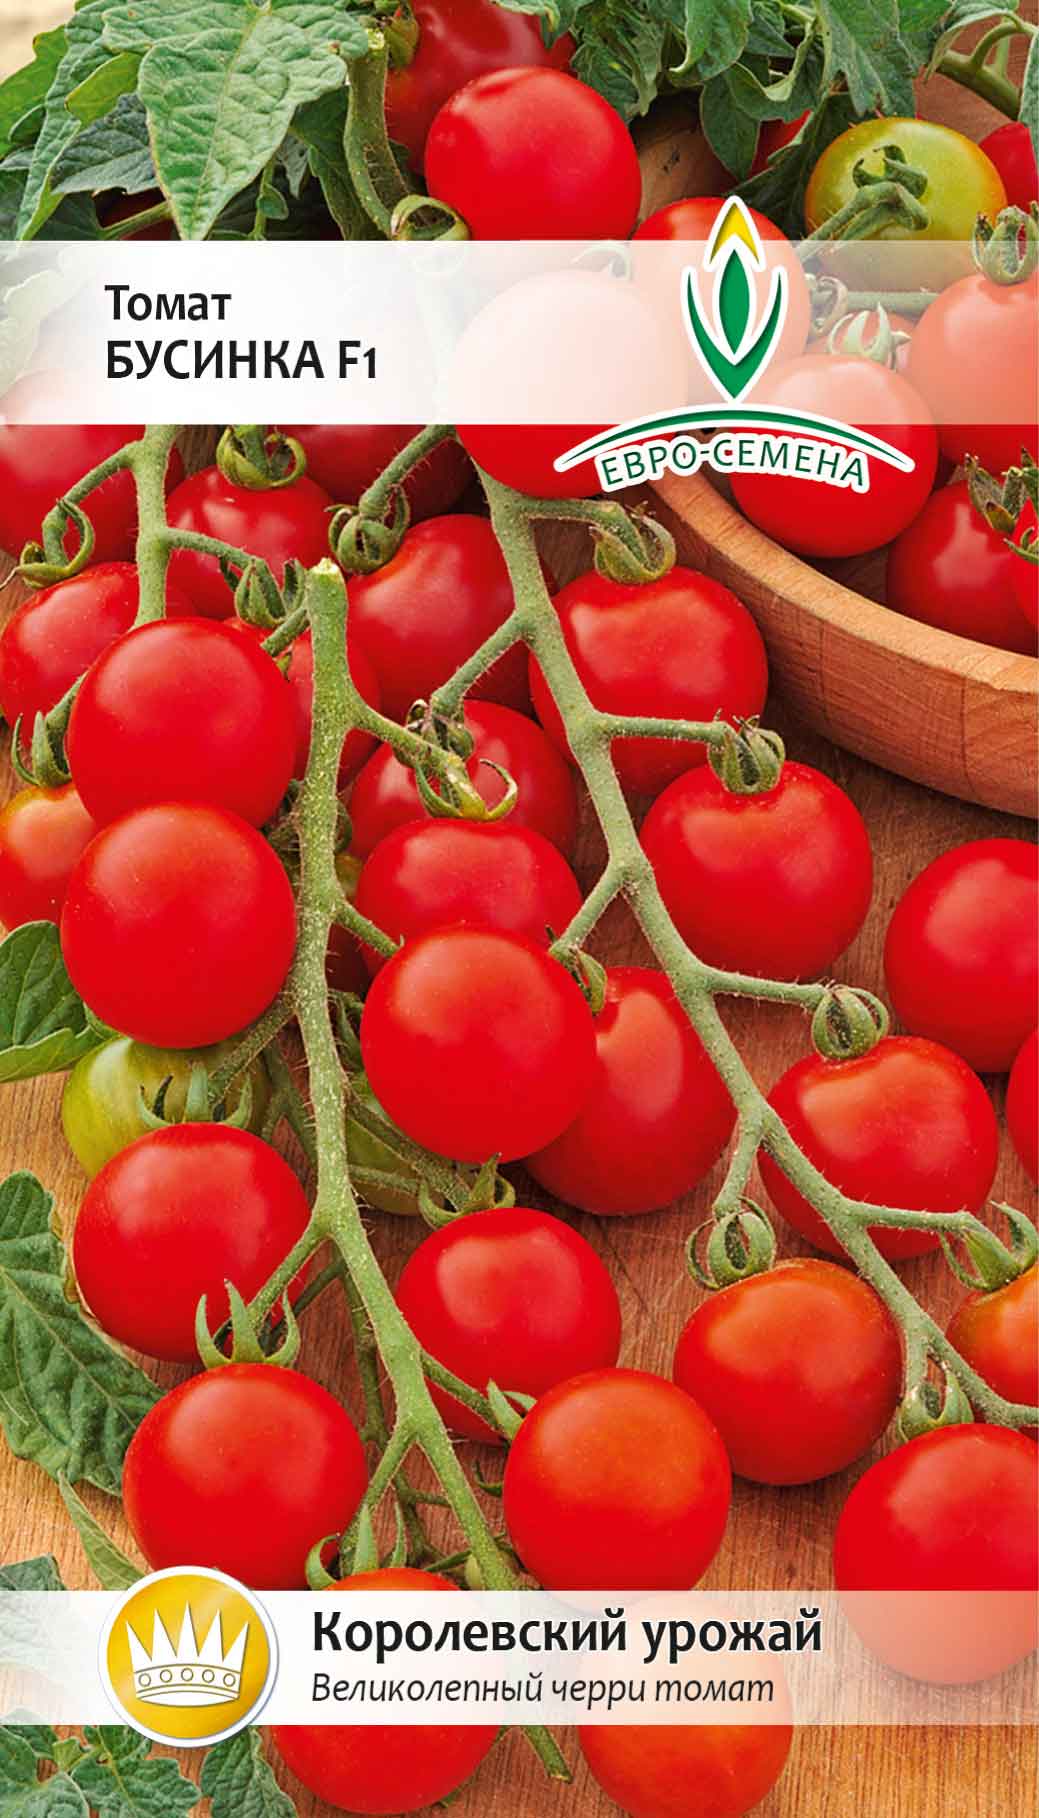 Лучшие низкорослые помидоры для открытого грунта